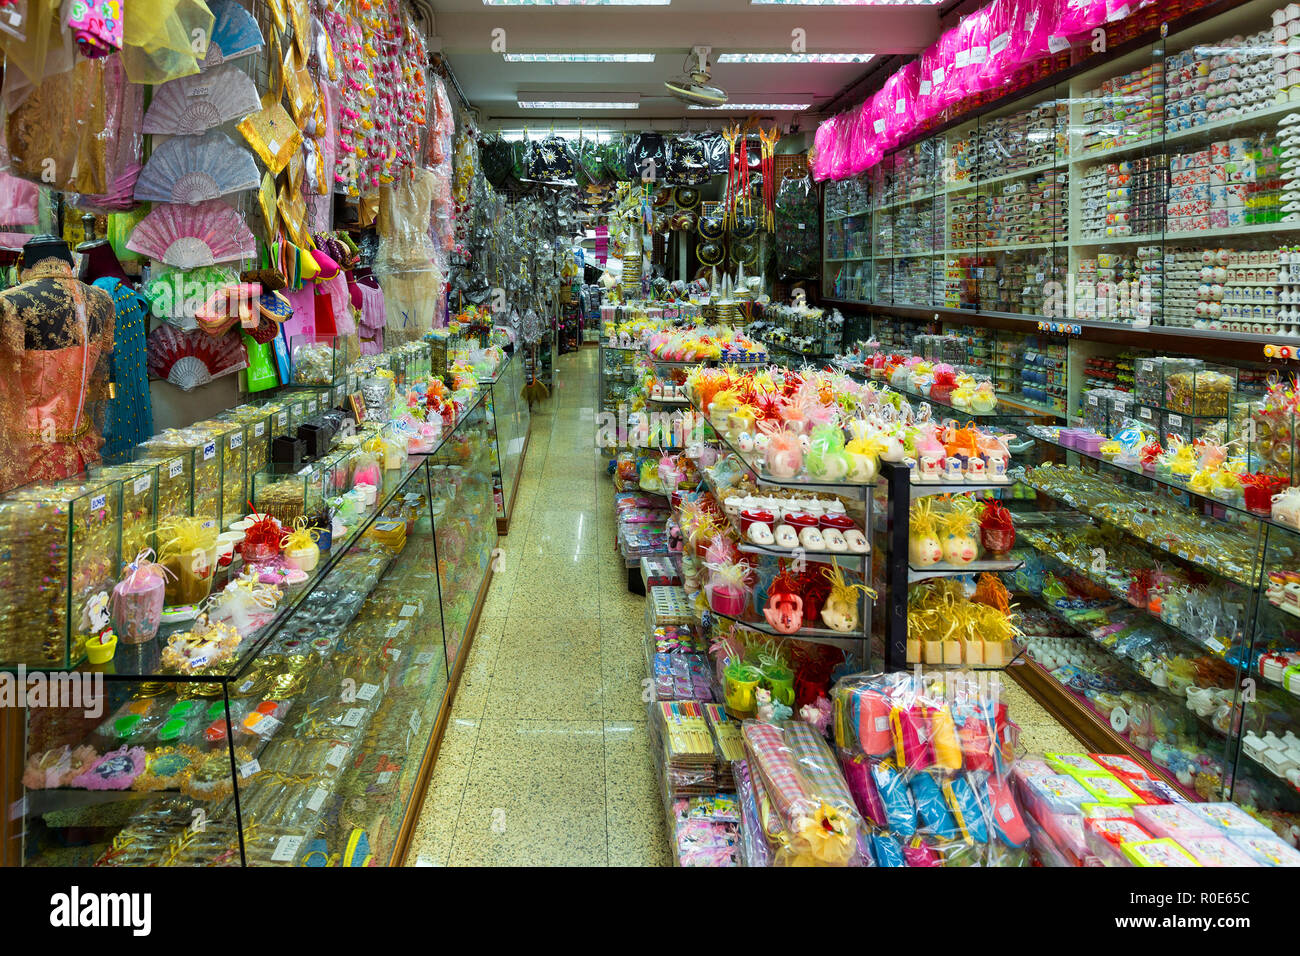 BANGKOK, THAÏLANDE, le 18 février 2015 : voir l'intérieur d'un magasin chinois général plein de différents animaux dans le quartier chinois de Bangkok, Thaïlande Banque D'Images